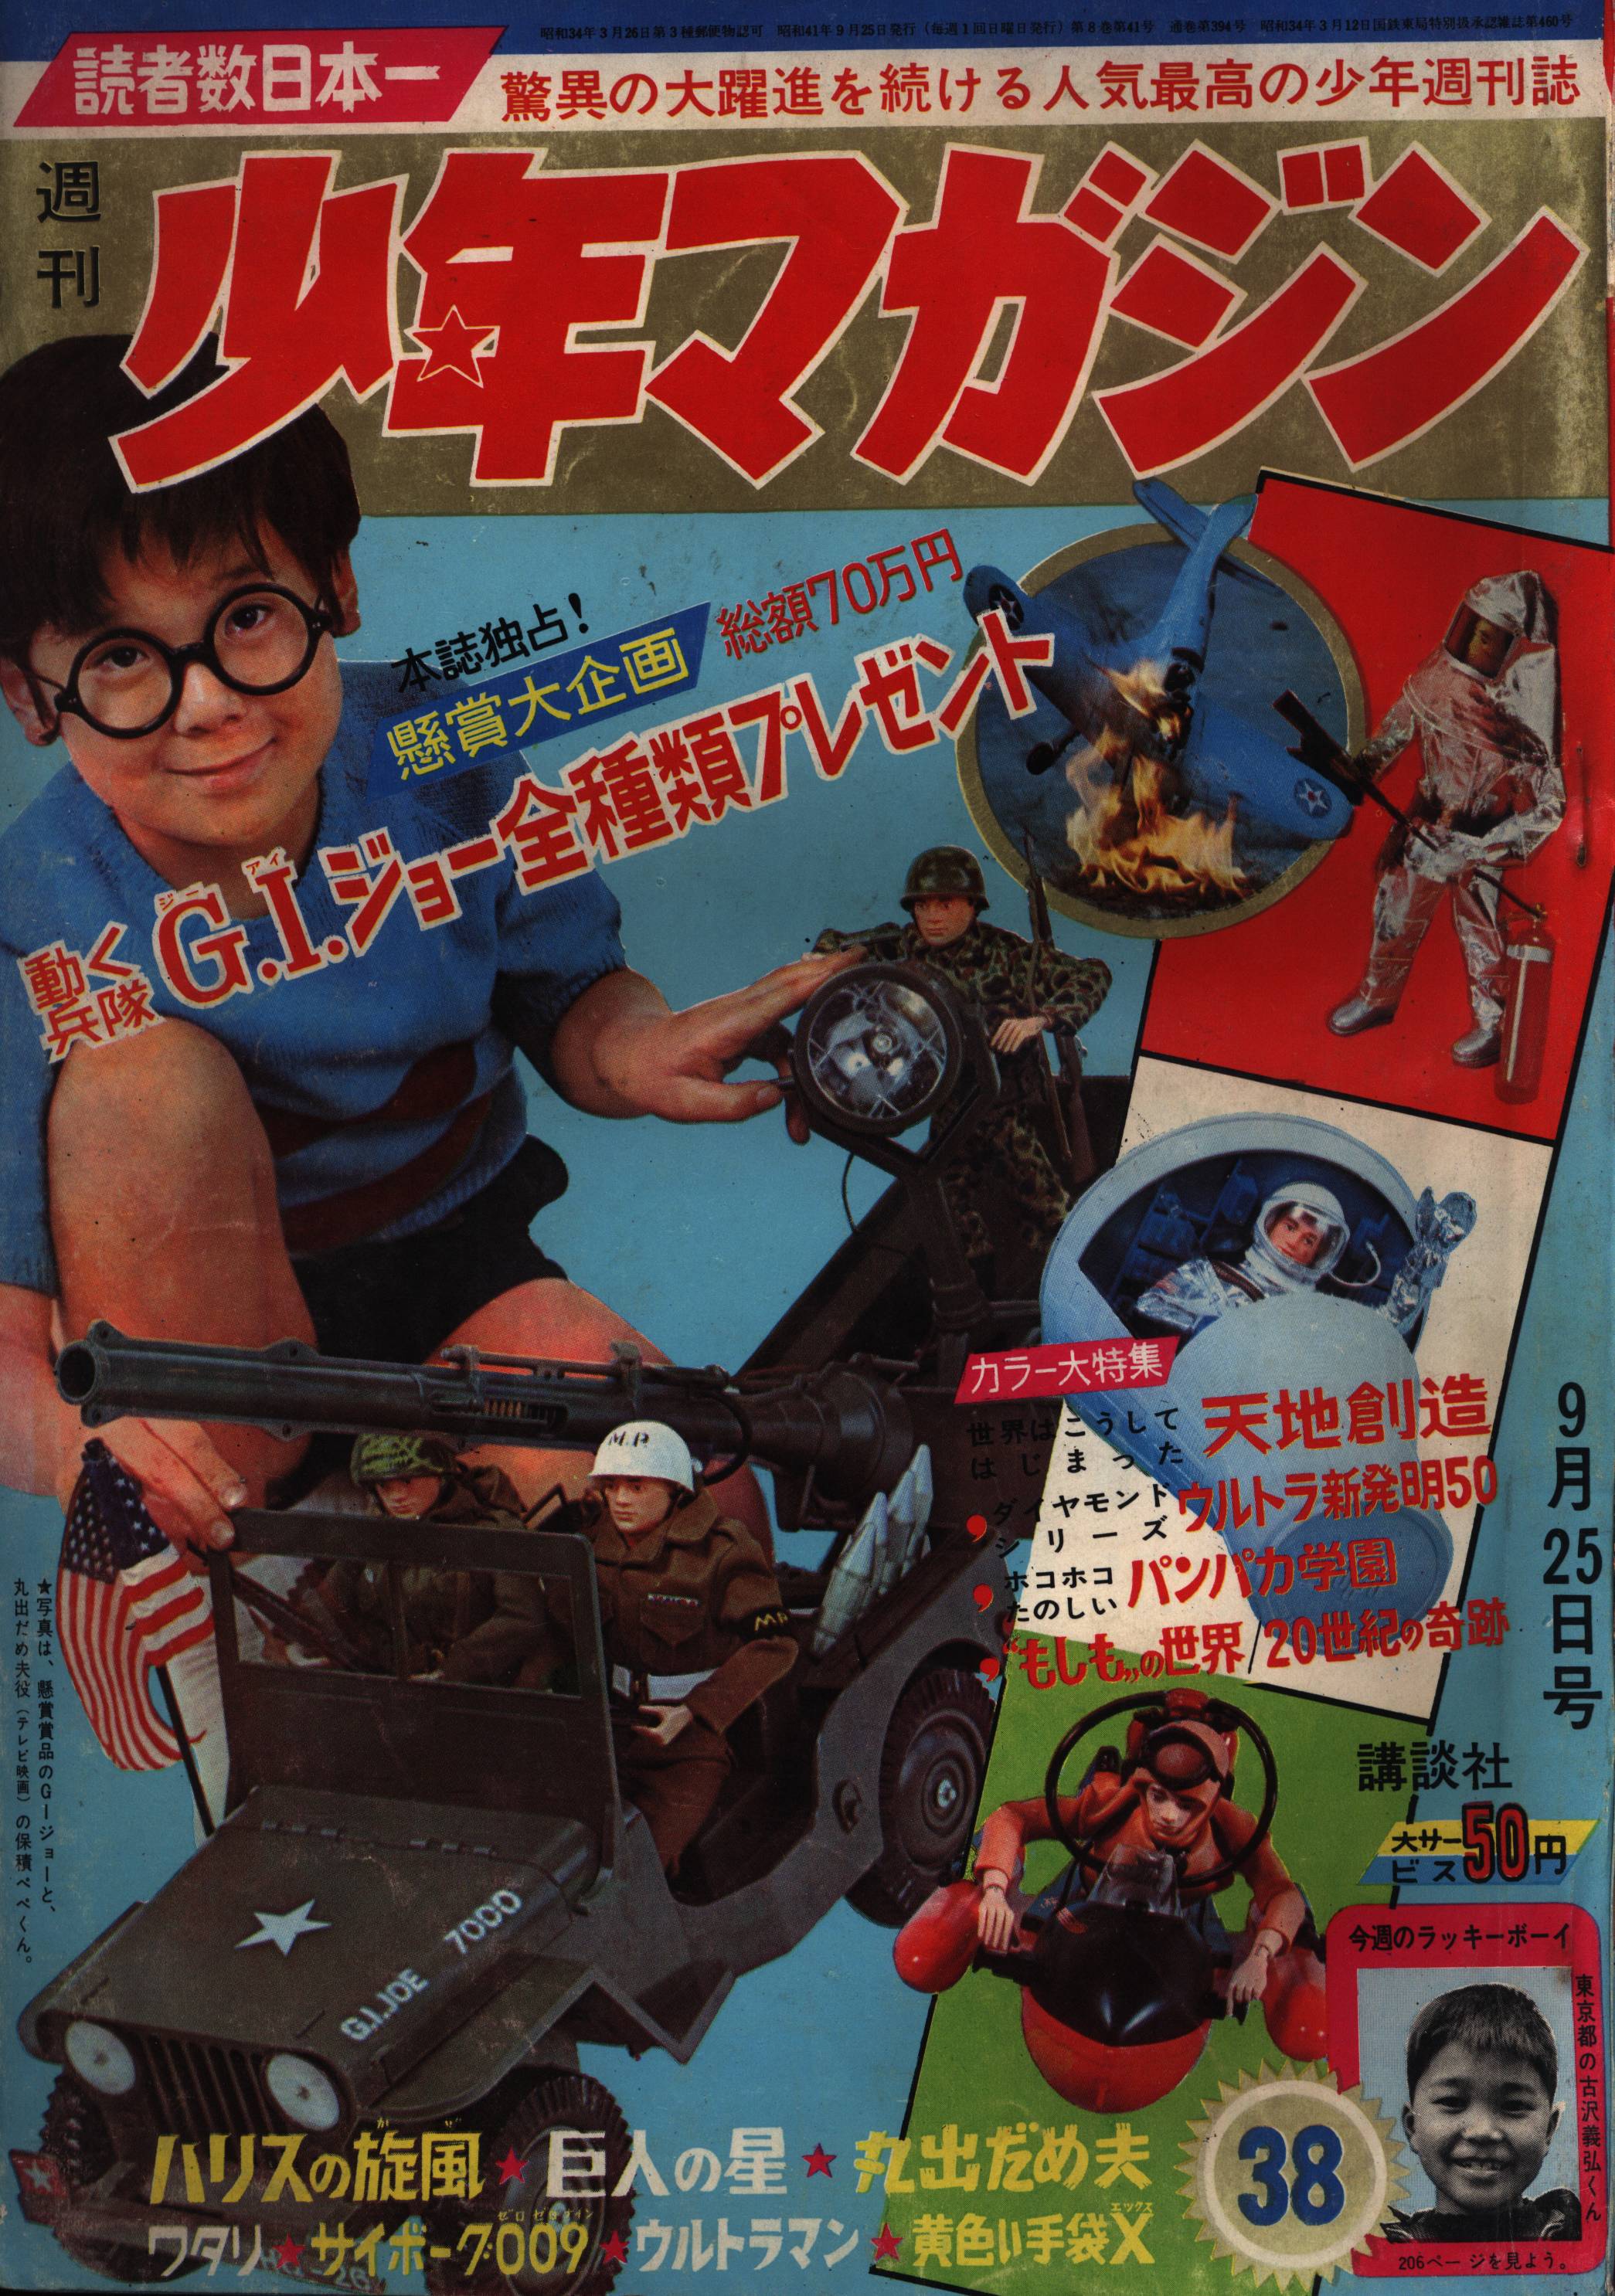 昭和41年10月23日発行少年マガジン1966年